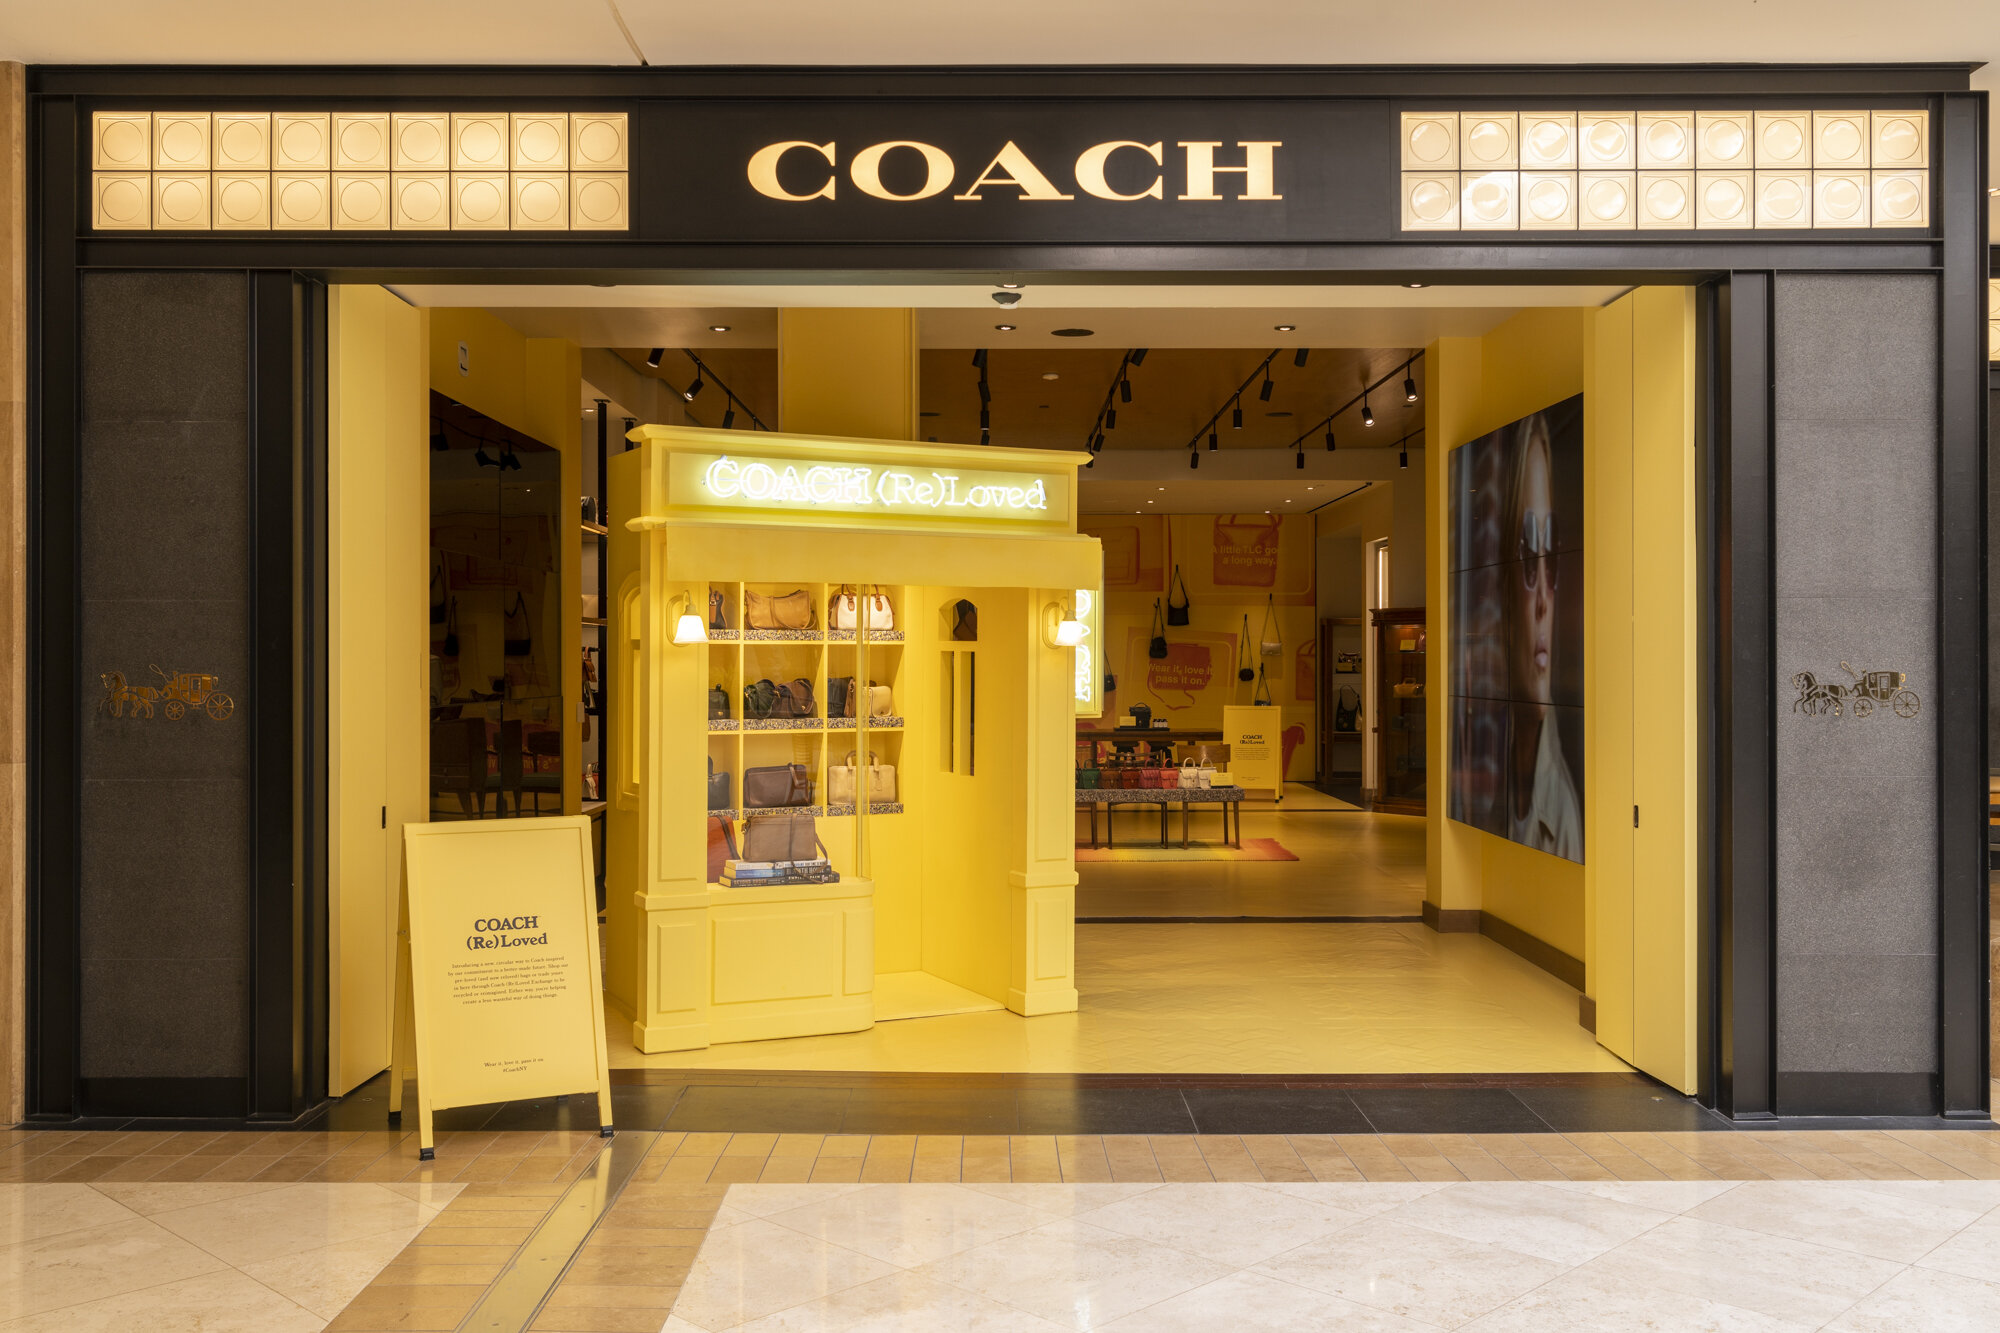 COACH | Coach (Re)Loved — HAN